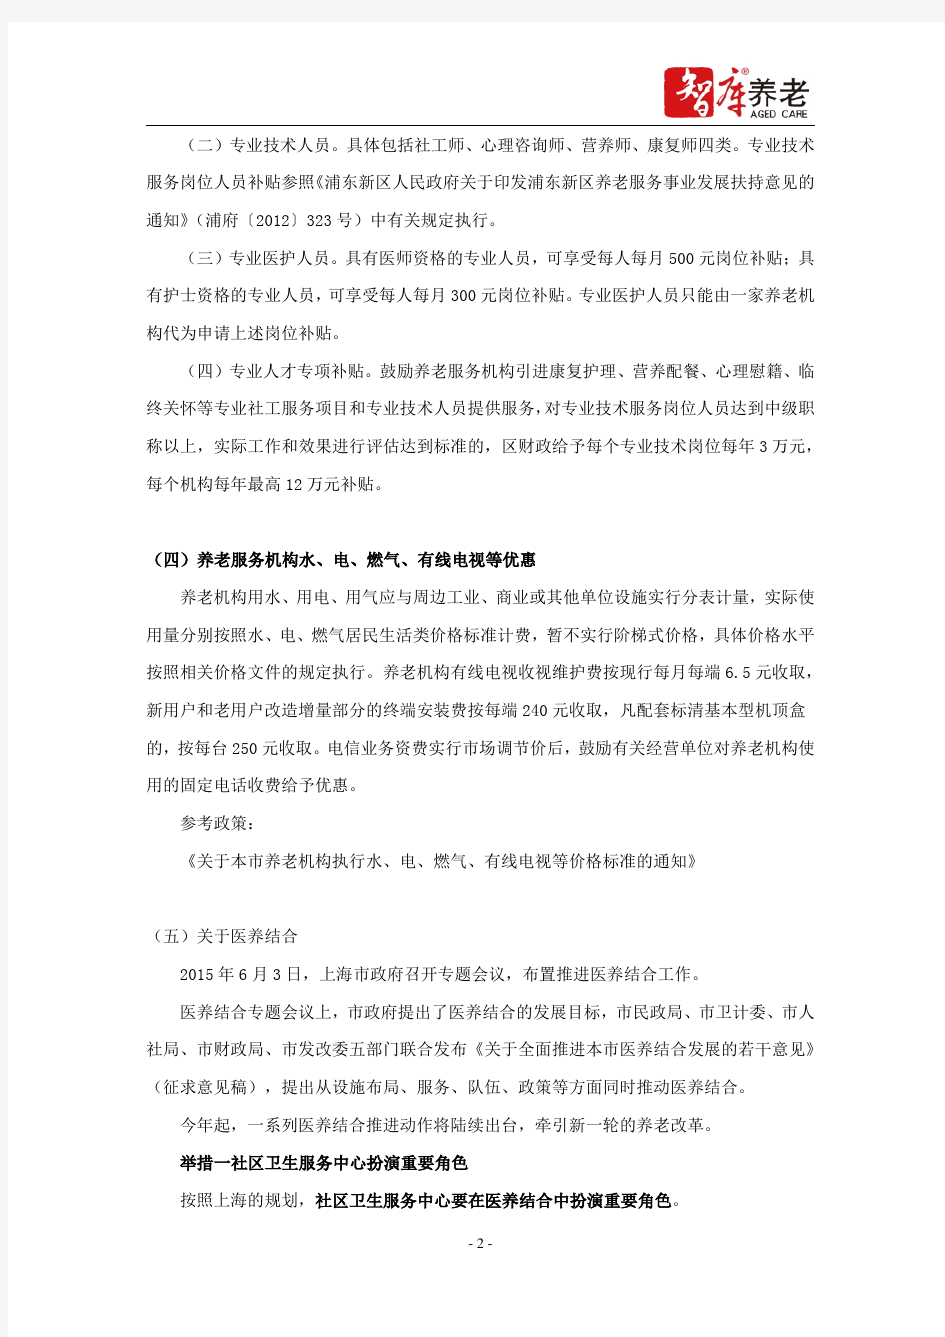 上海养老服务机构相关政策补贴